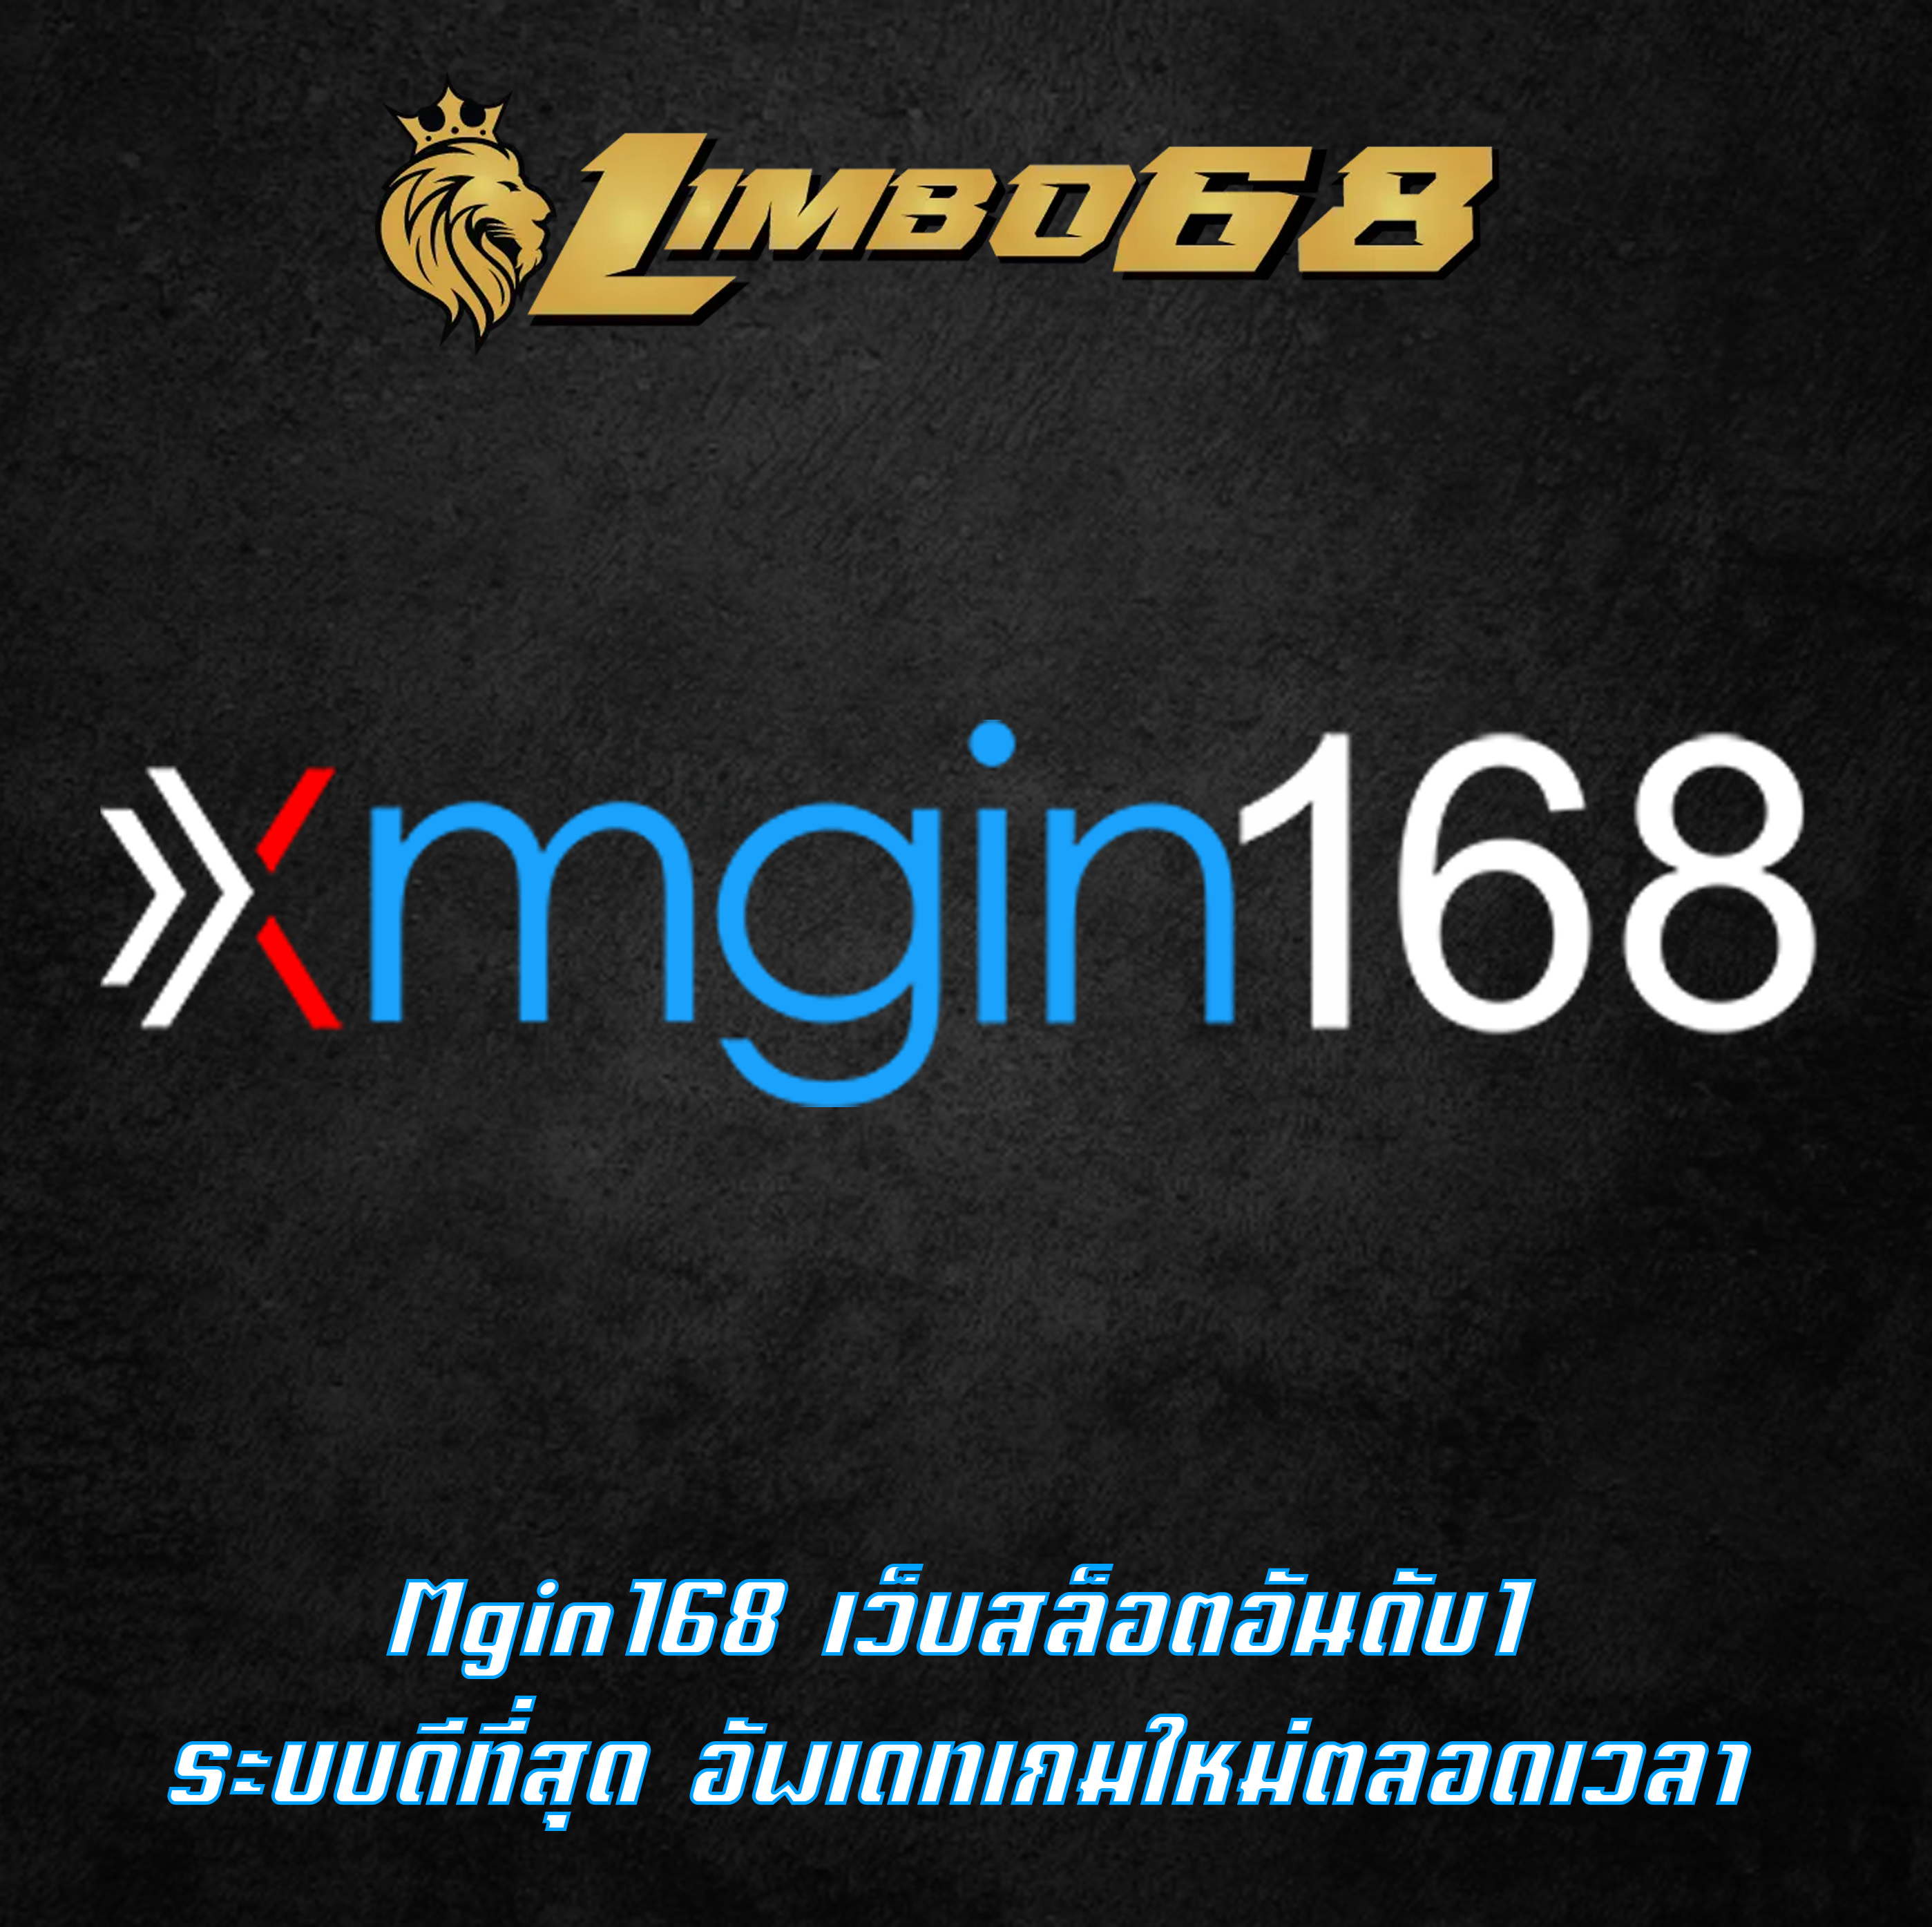 Mgin168 เว็บสล็อตอันดับ1 ระบบดีที่สุด อัพเดทเกมใหม่ตลอดเวลา